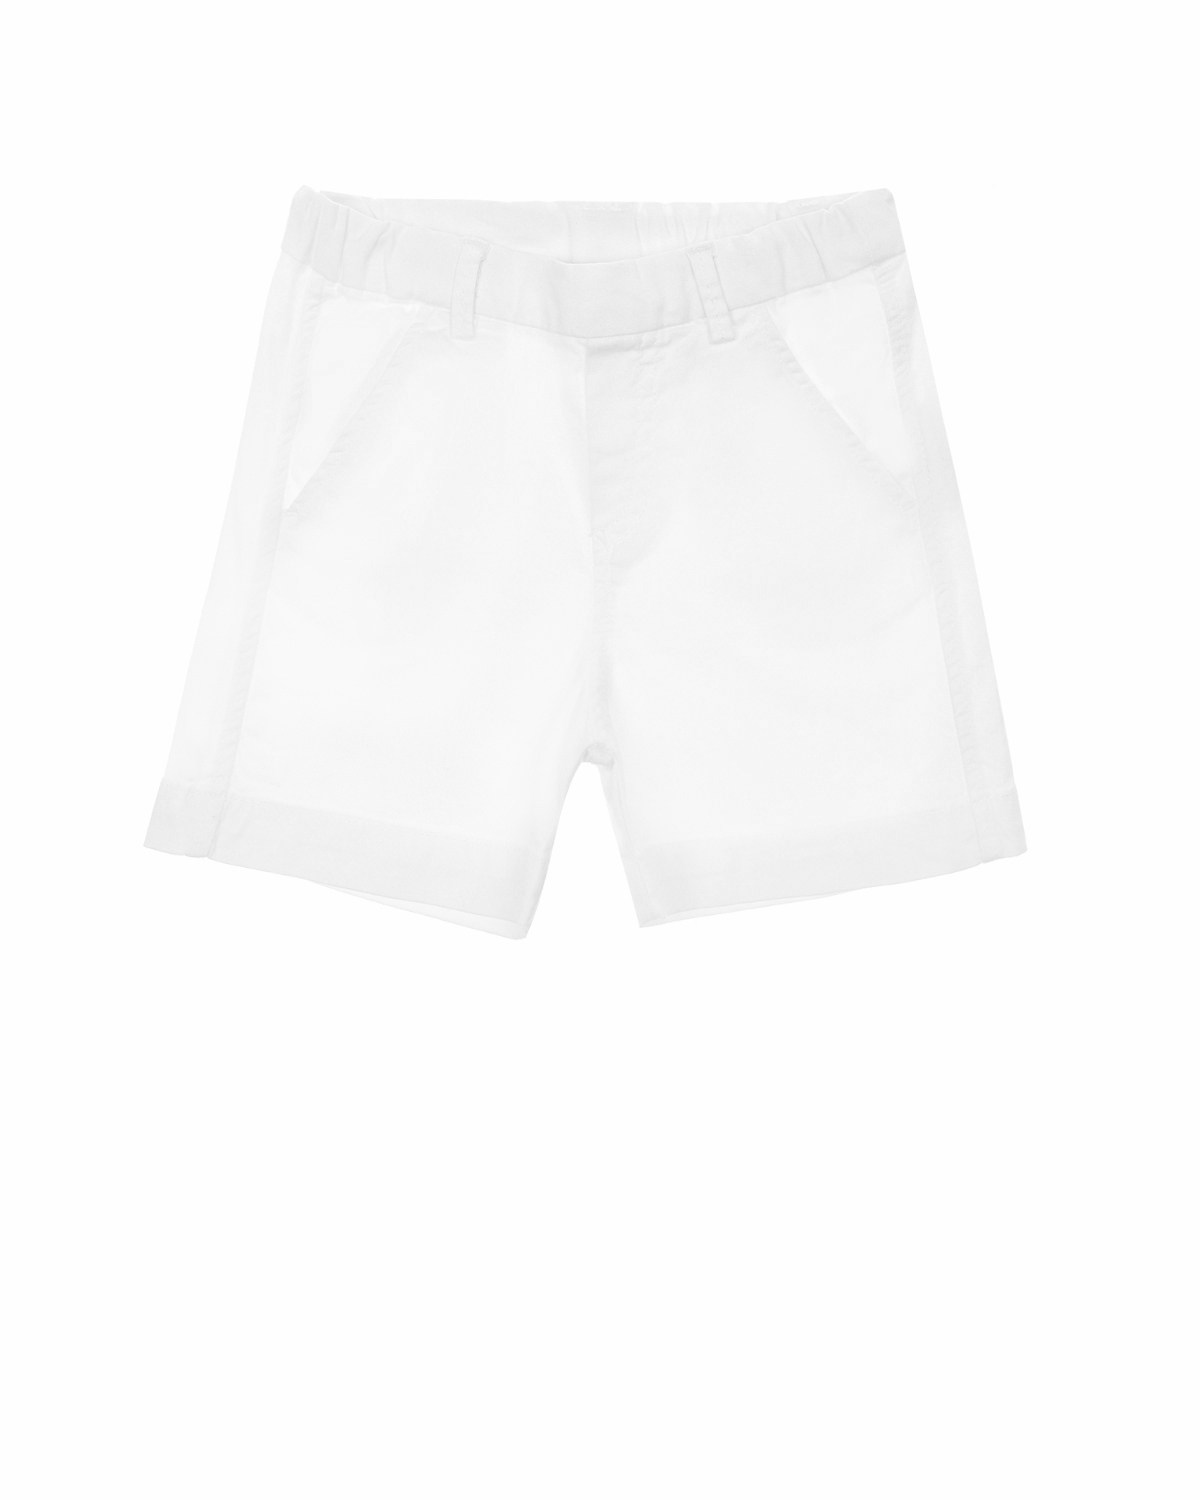 Однотонные шорты с карманами Tartine et Chocolat детские, размер 74, цвет белый - фото 1